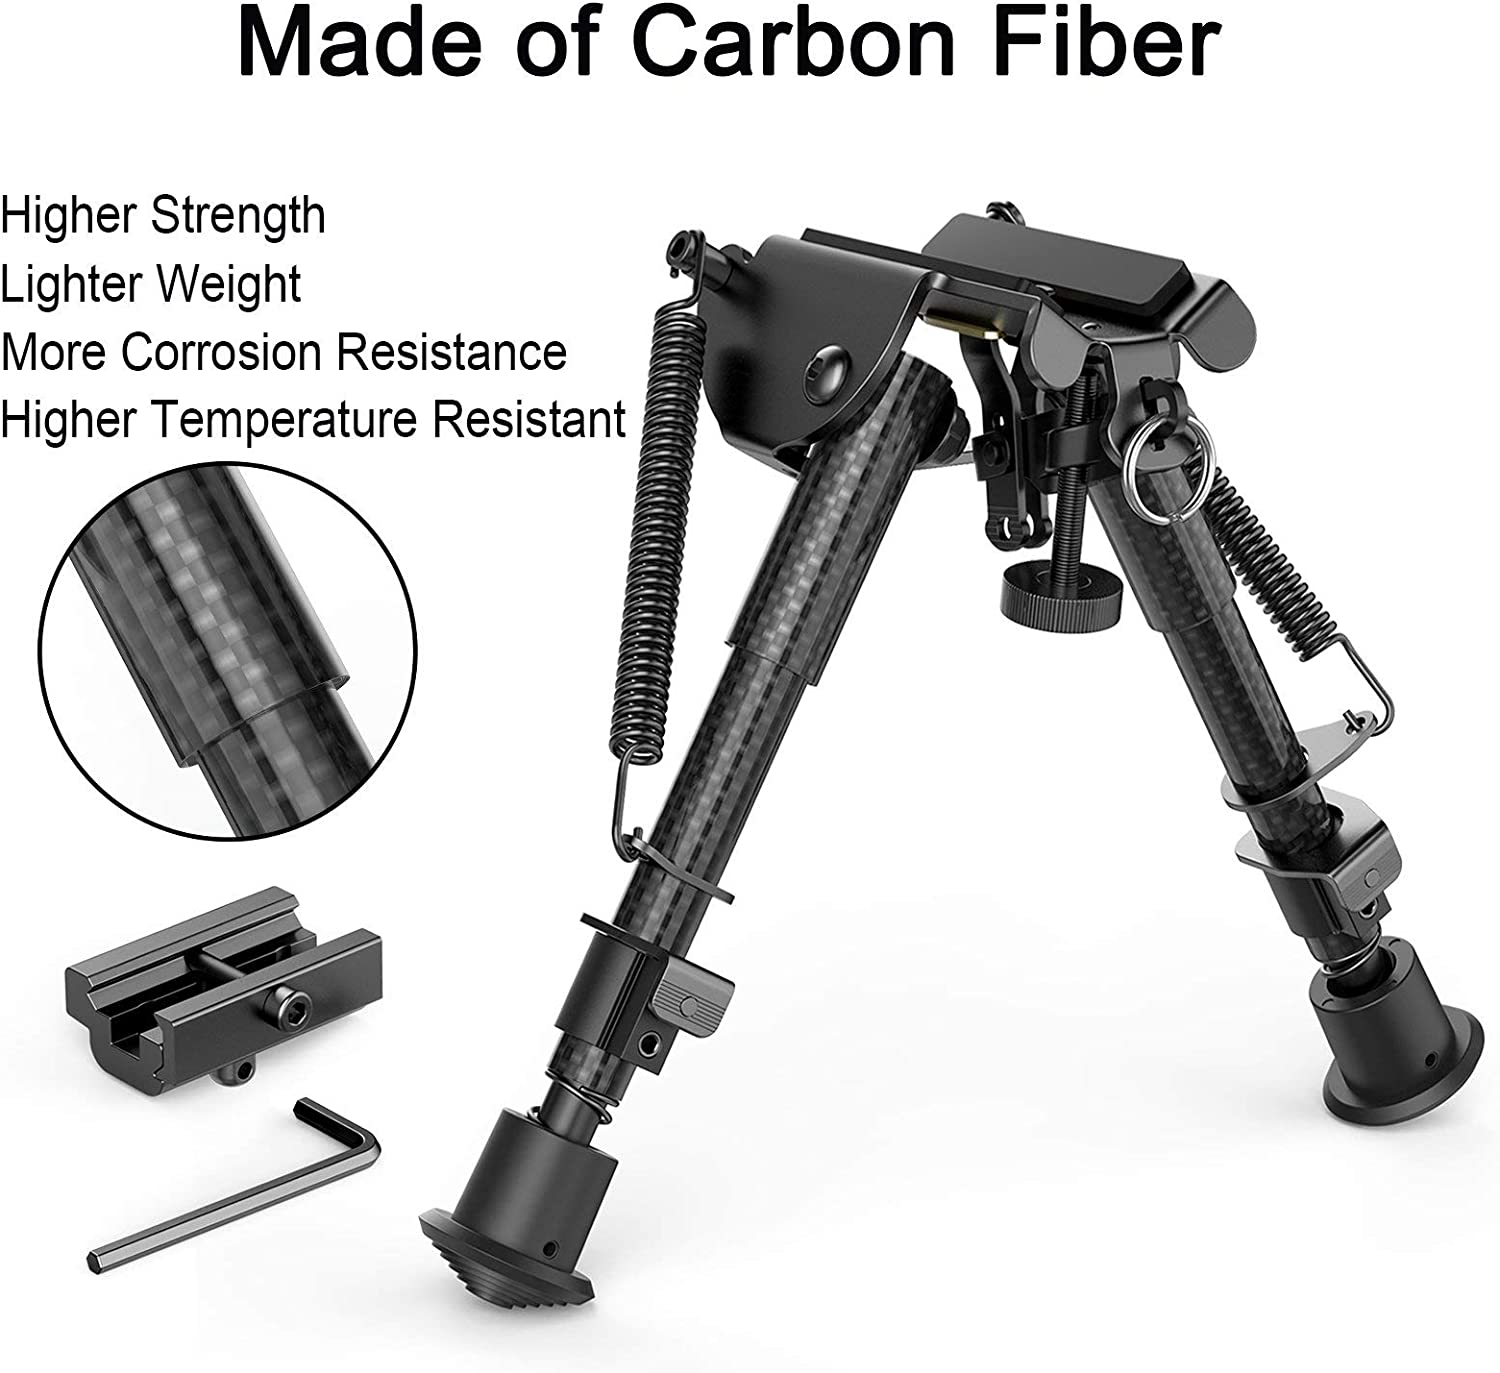 Bipiede Feyachi RB5074 in fibra di carbonio - Supporto regolabile per fucile